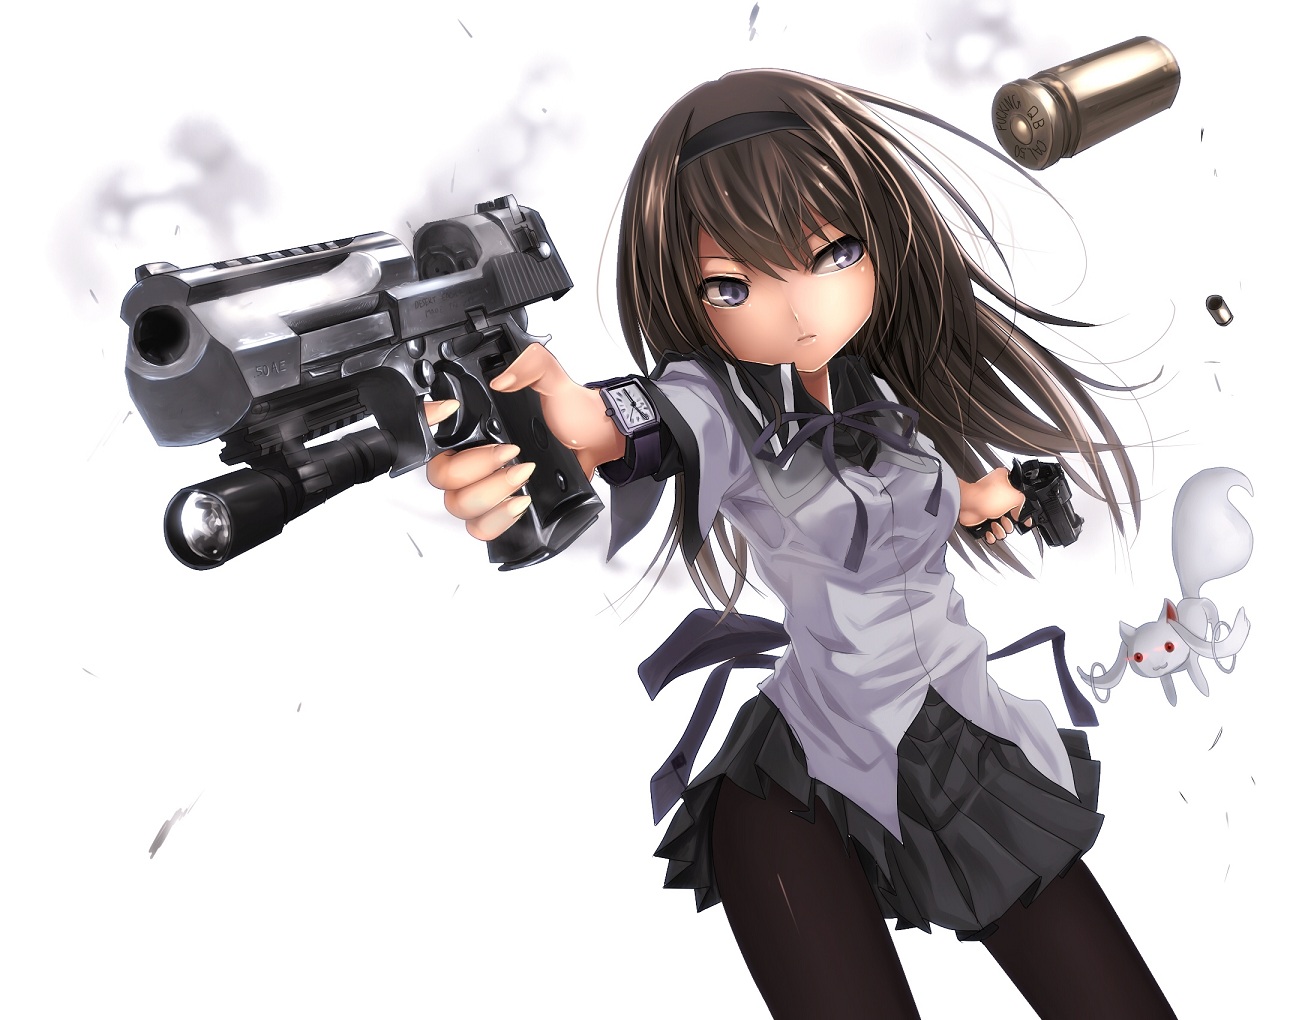 47+ Anime Gun Wallpaper on WallpaperSafari